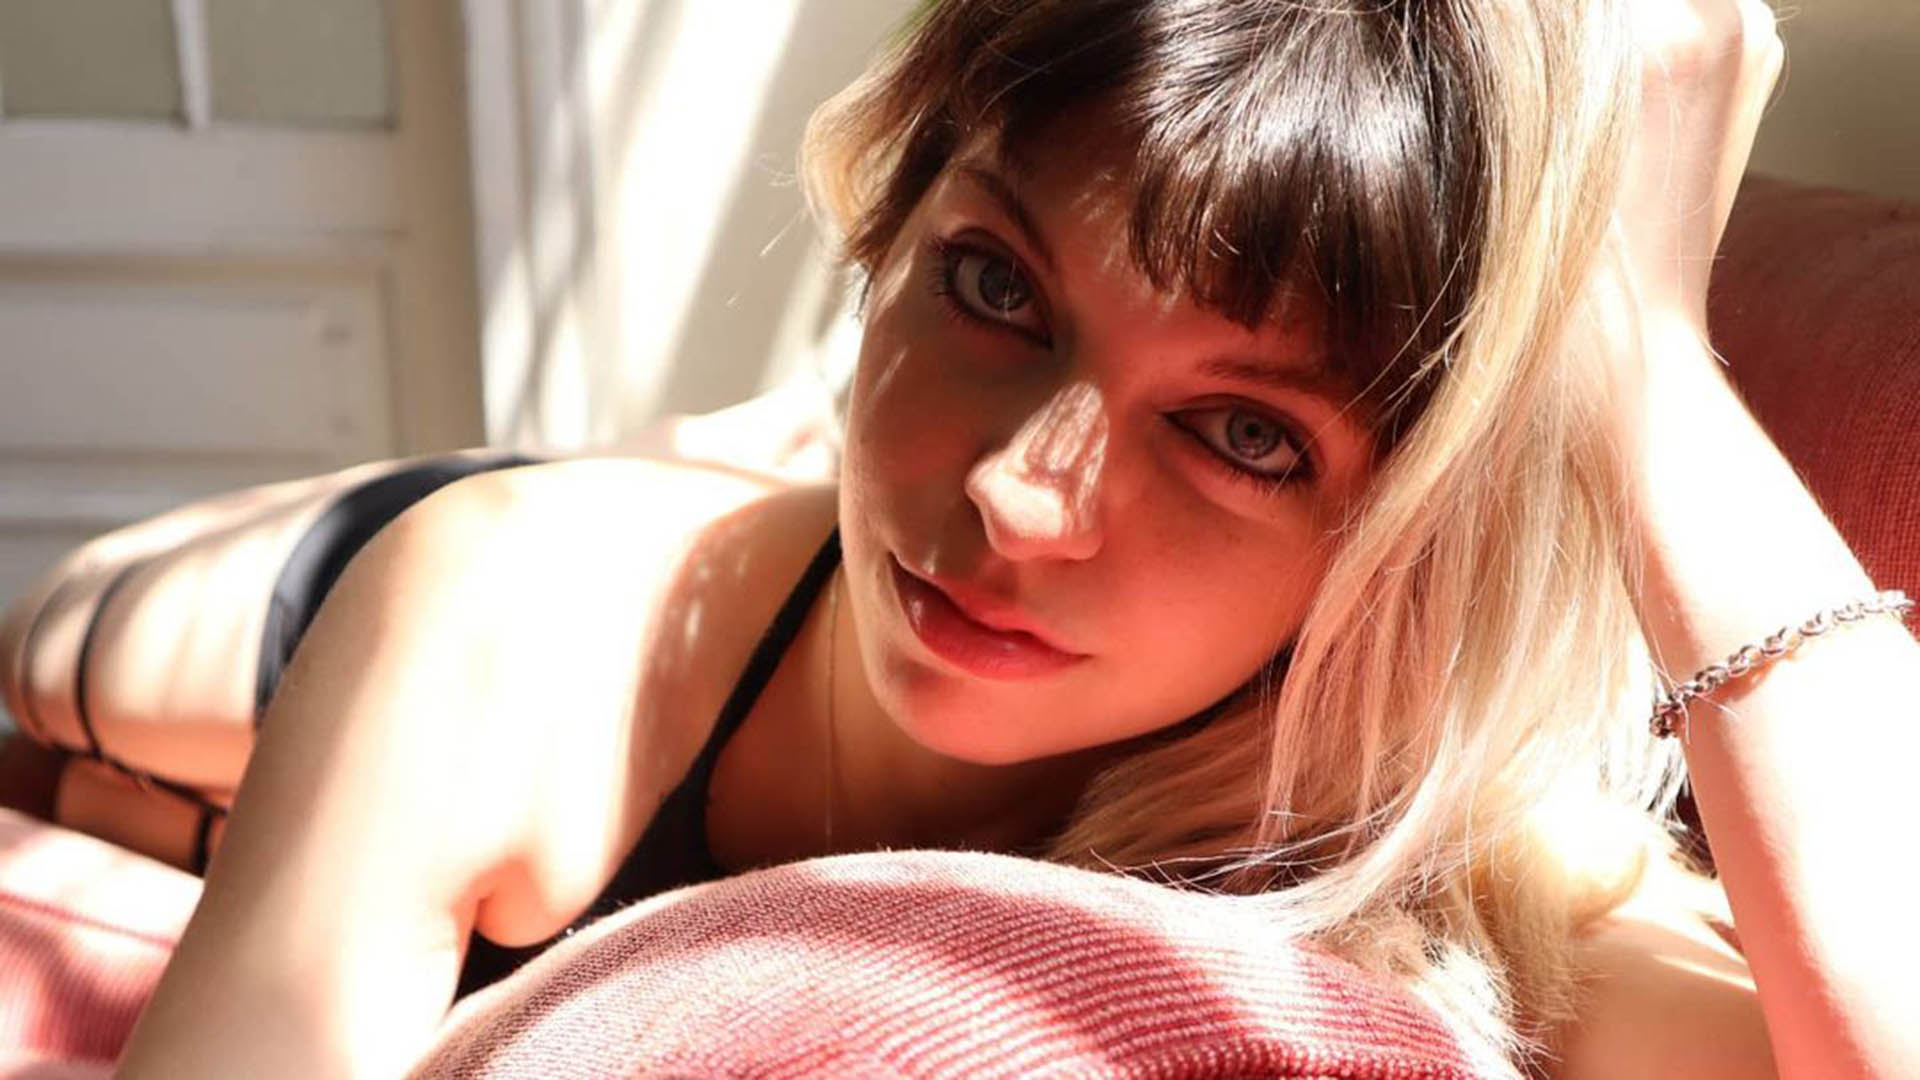 Es argentina y la llaman “la youtuber del porno” mientras se graba teniendo sexo, hace tutoriales